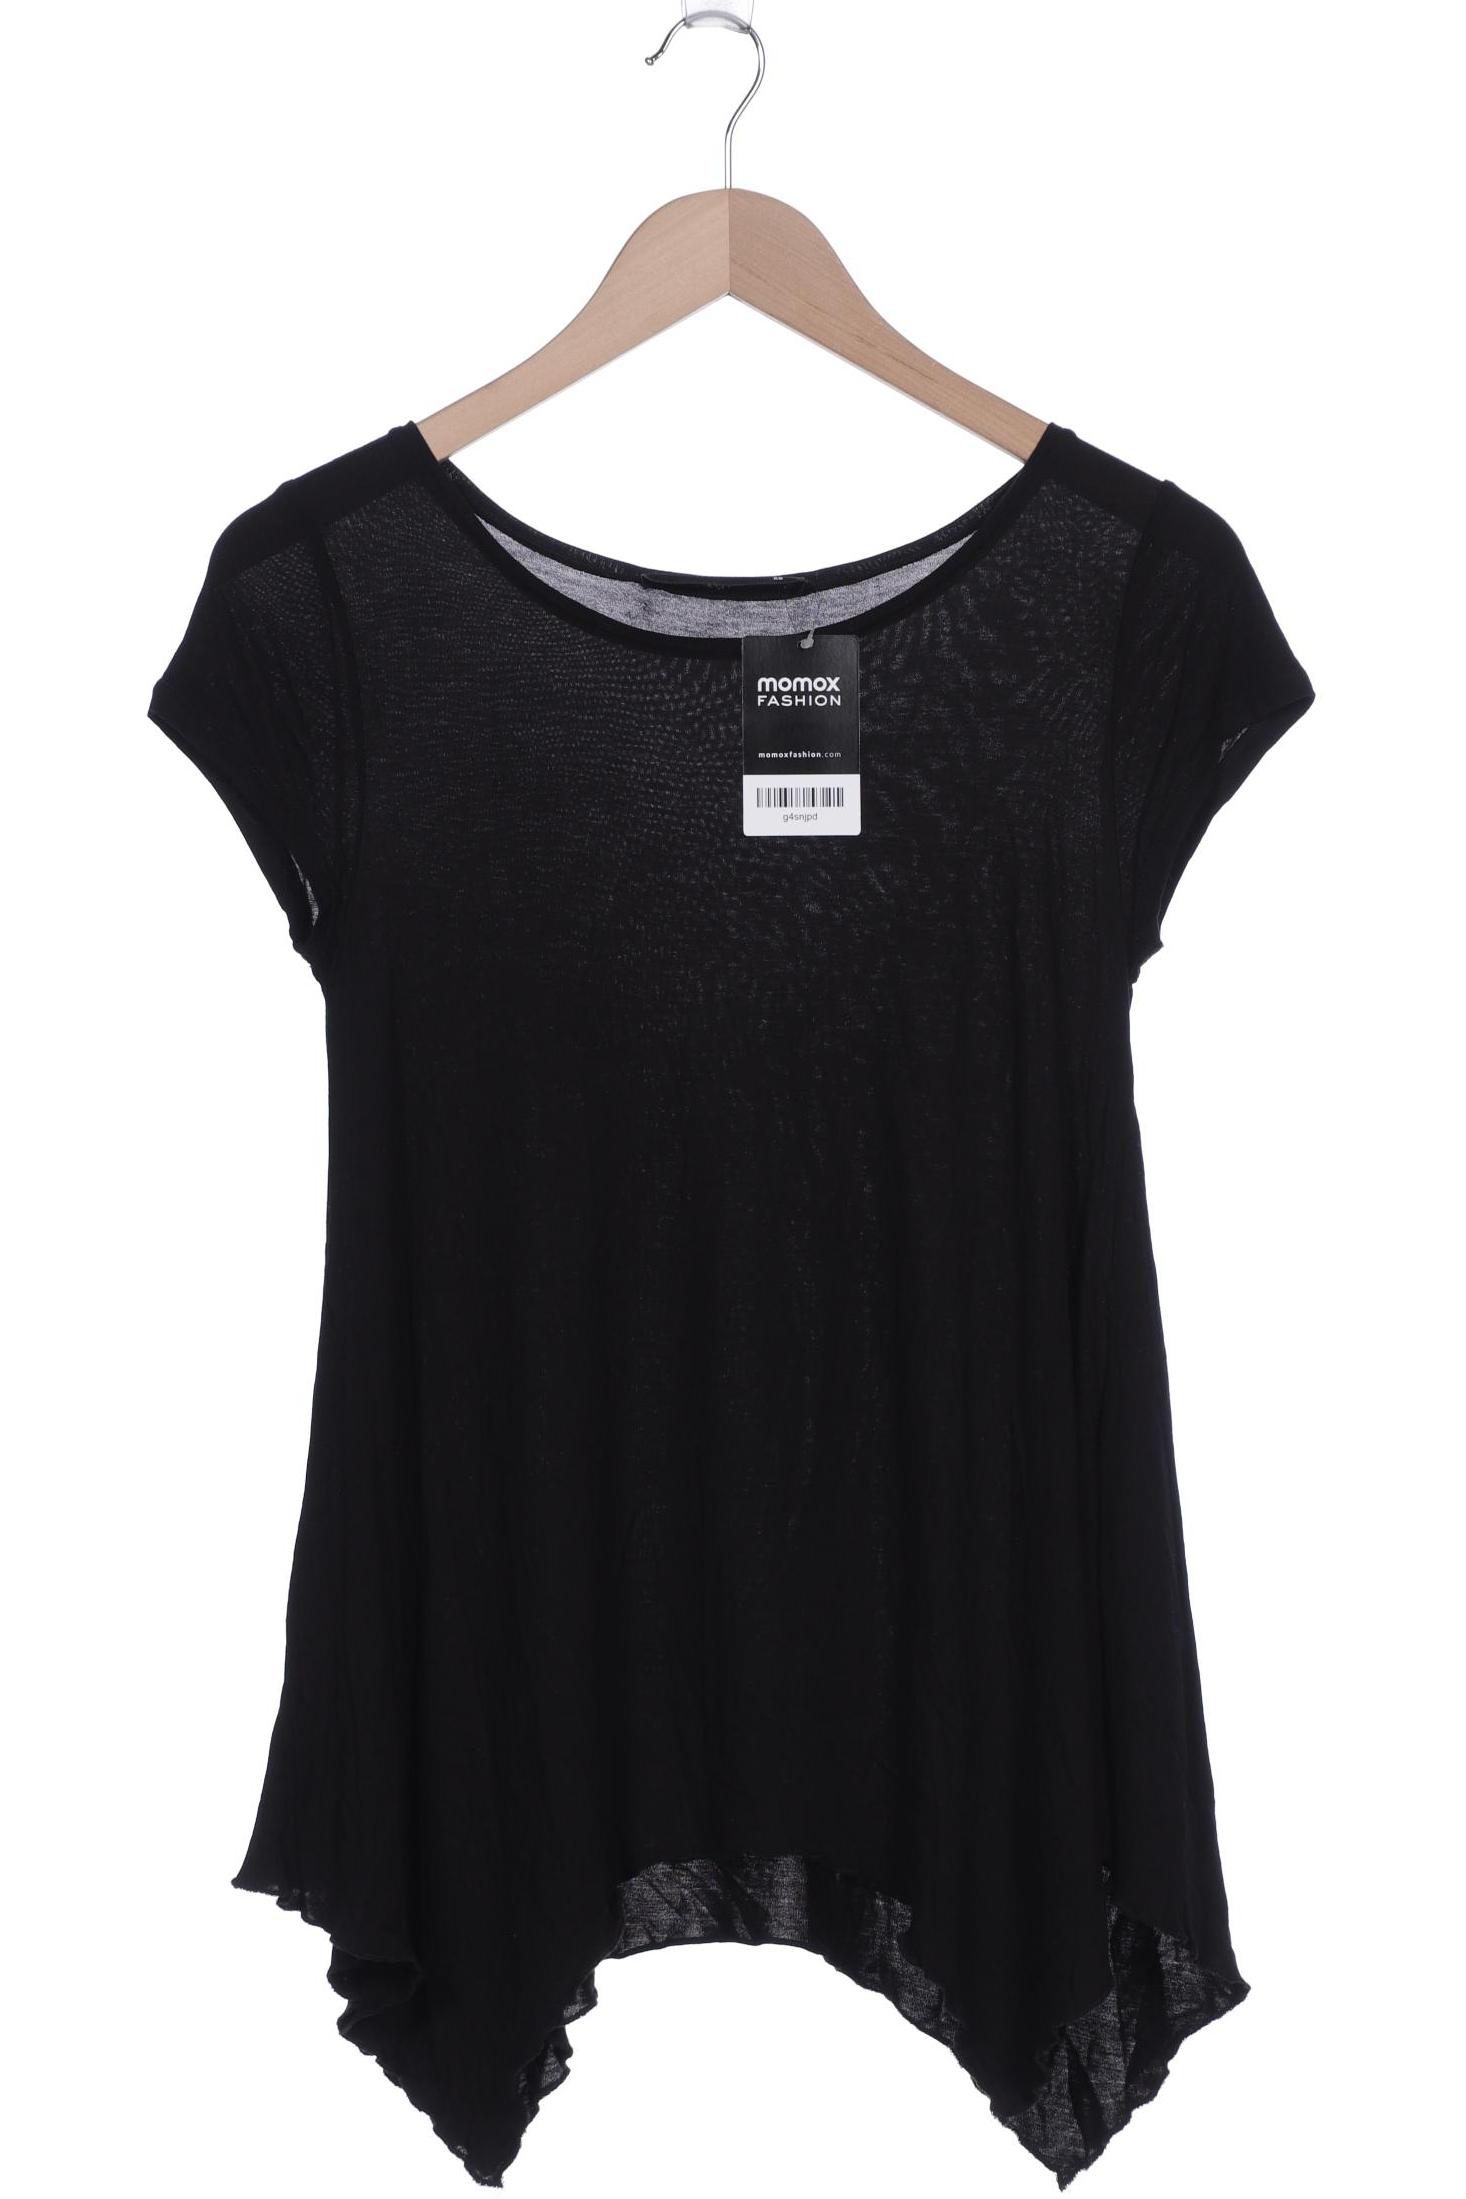 Hallhuber Damen T-Shirt, schwarz, Gr. 34 von Hallhuber